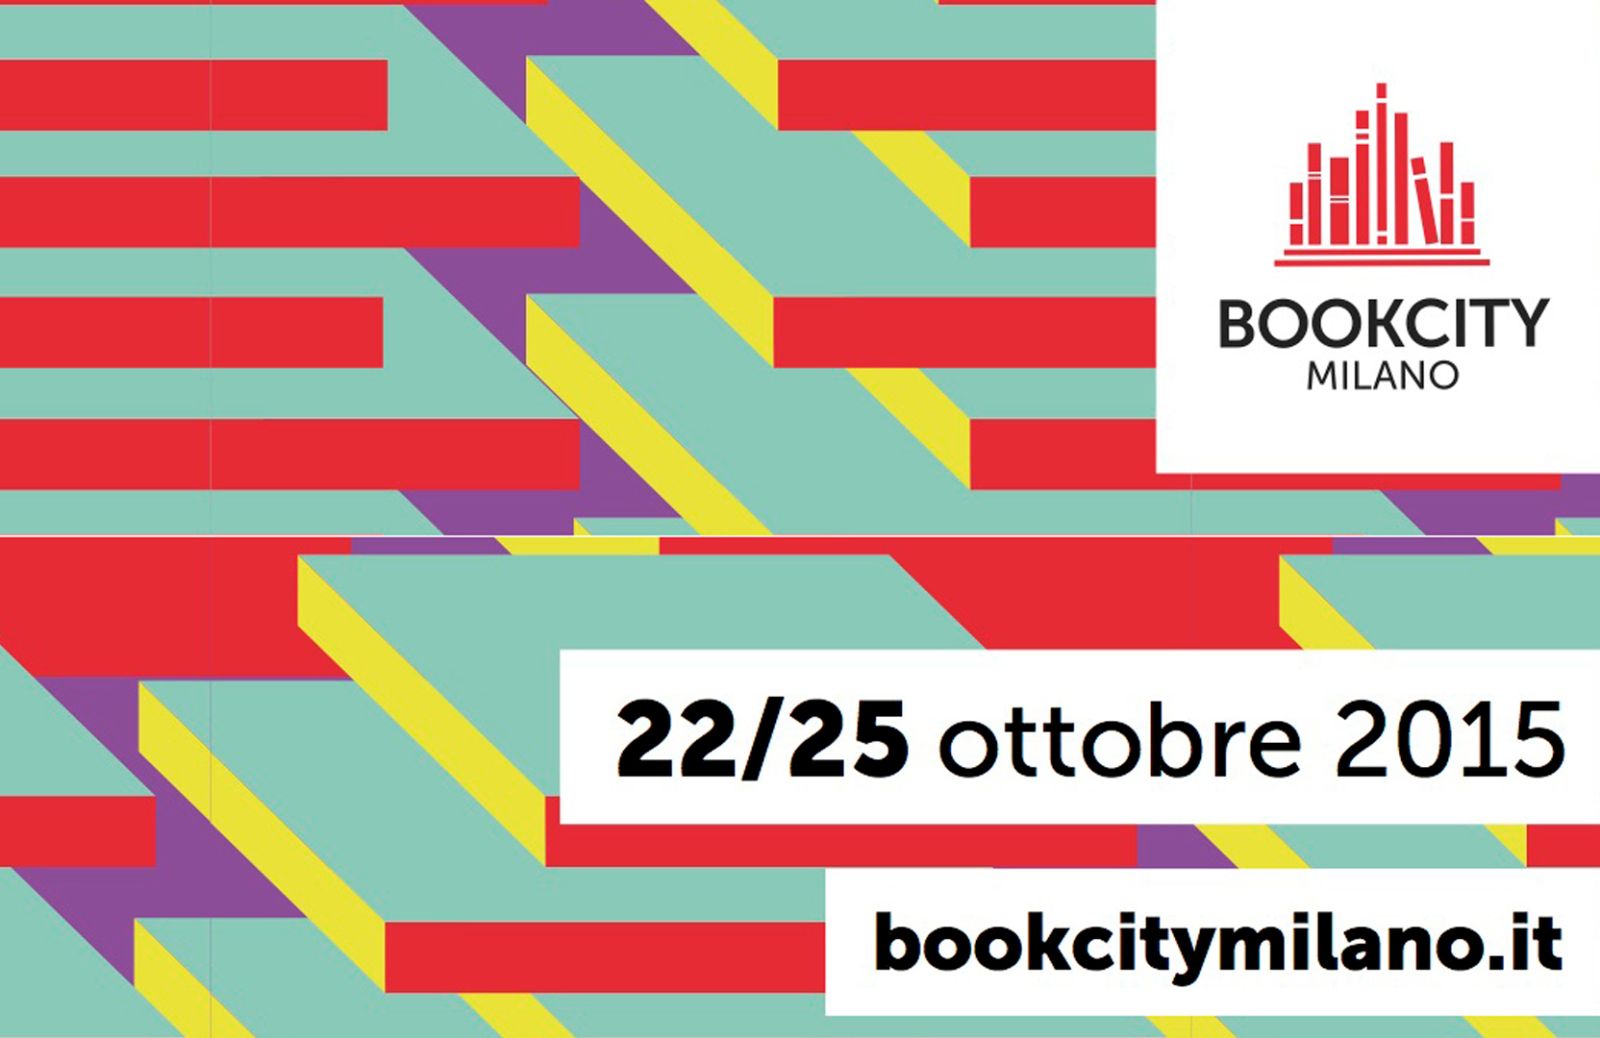 Bookcity Milano, 4 giorni di straordinari appuntamenti 